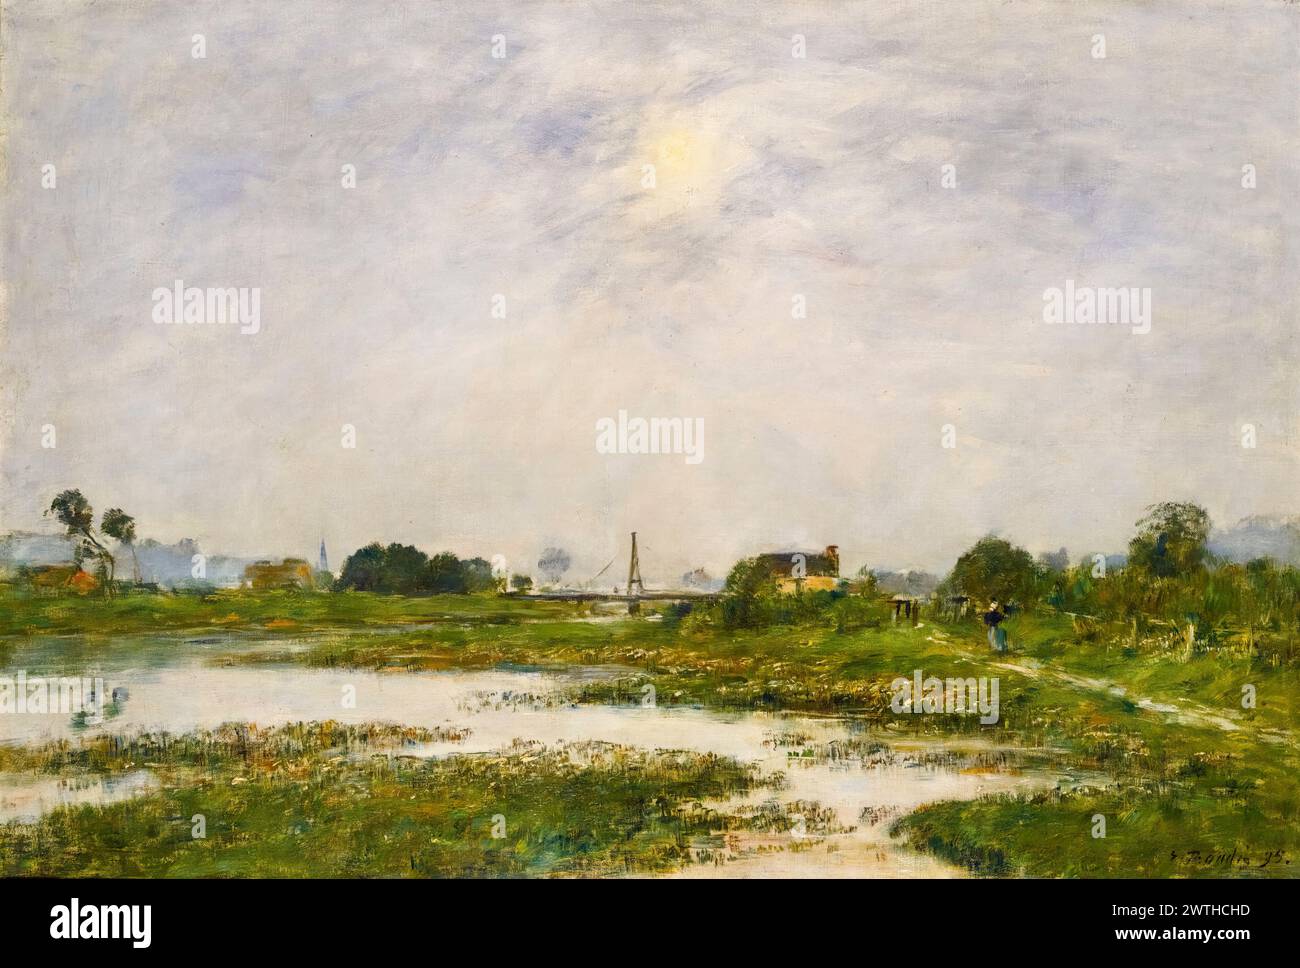 Les bords de la Touques pendentif les grandes marées (les rives de la Touques pendant les grandes marées), peinture de paysage à l'huile sur toile par Eugène boudin, 1895 Banque D'Images